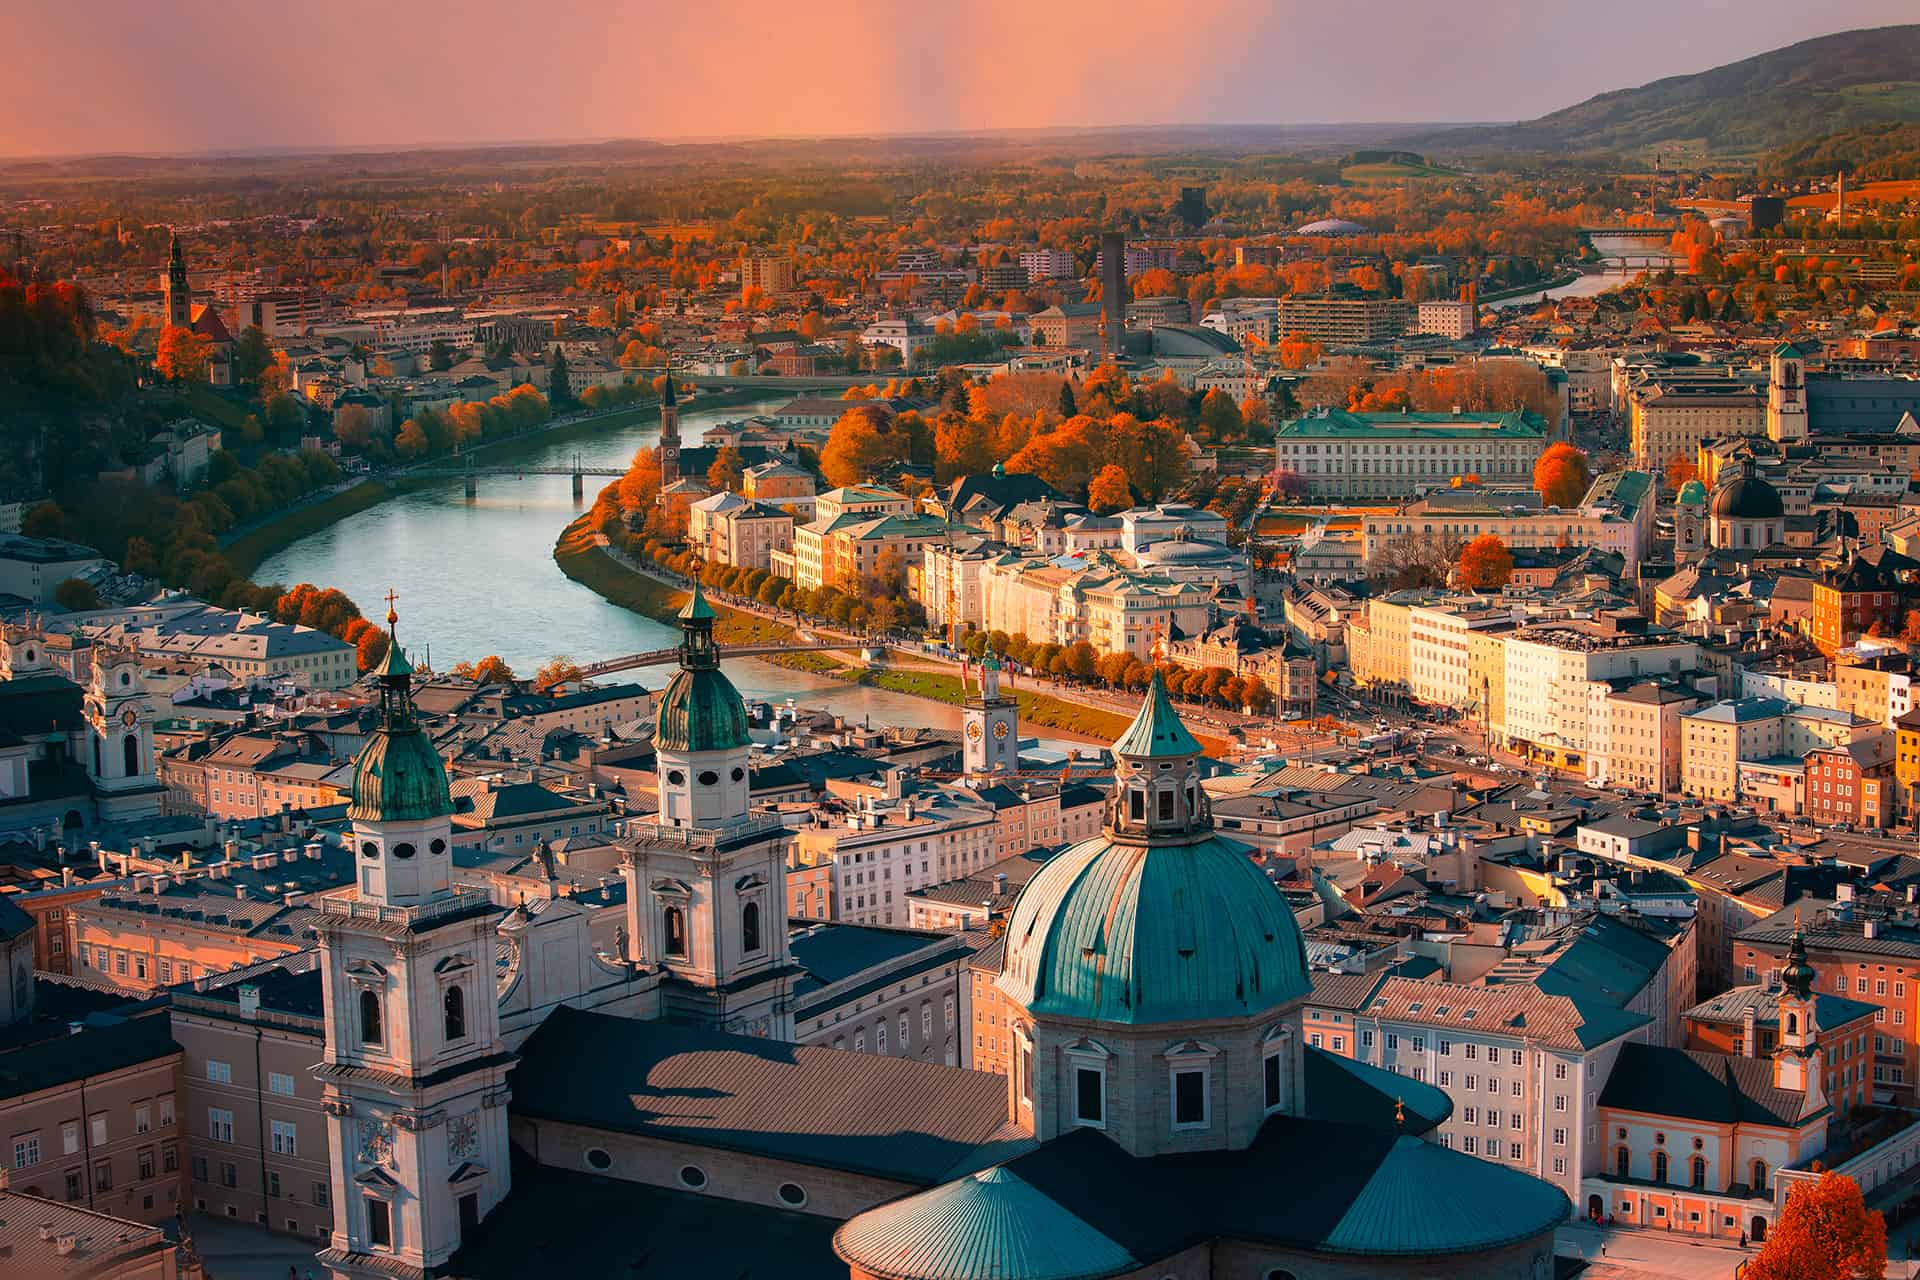 Visiter Vienne en 4 jours, que voir + que faire à Vienne ? Mes conseils